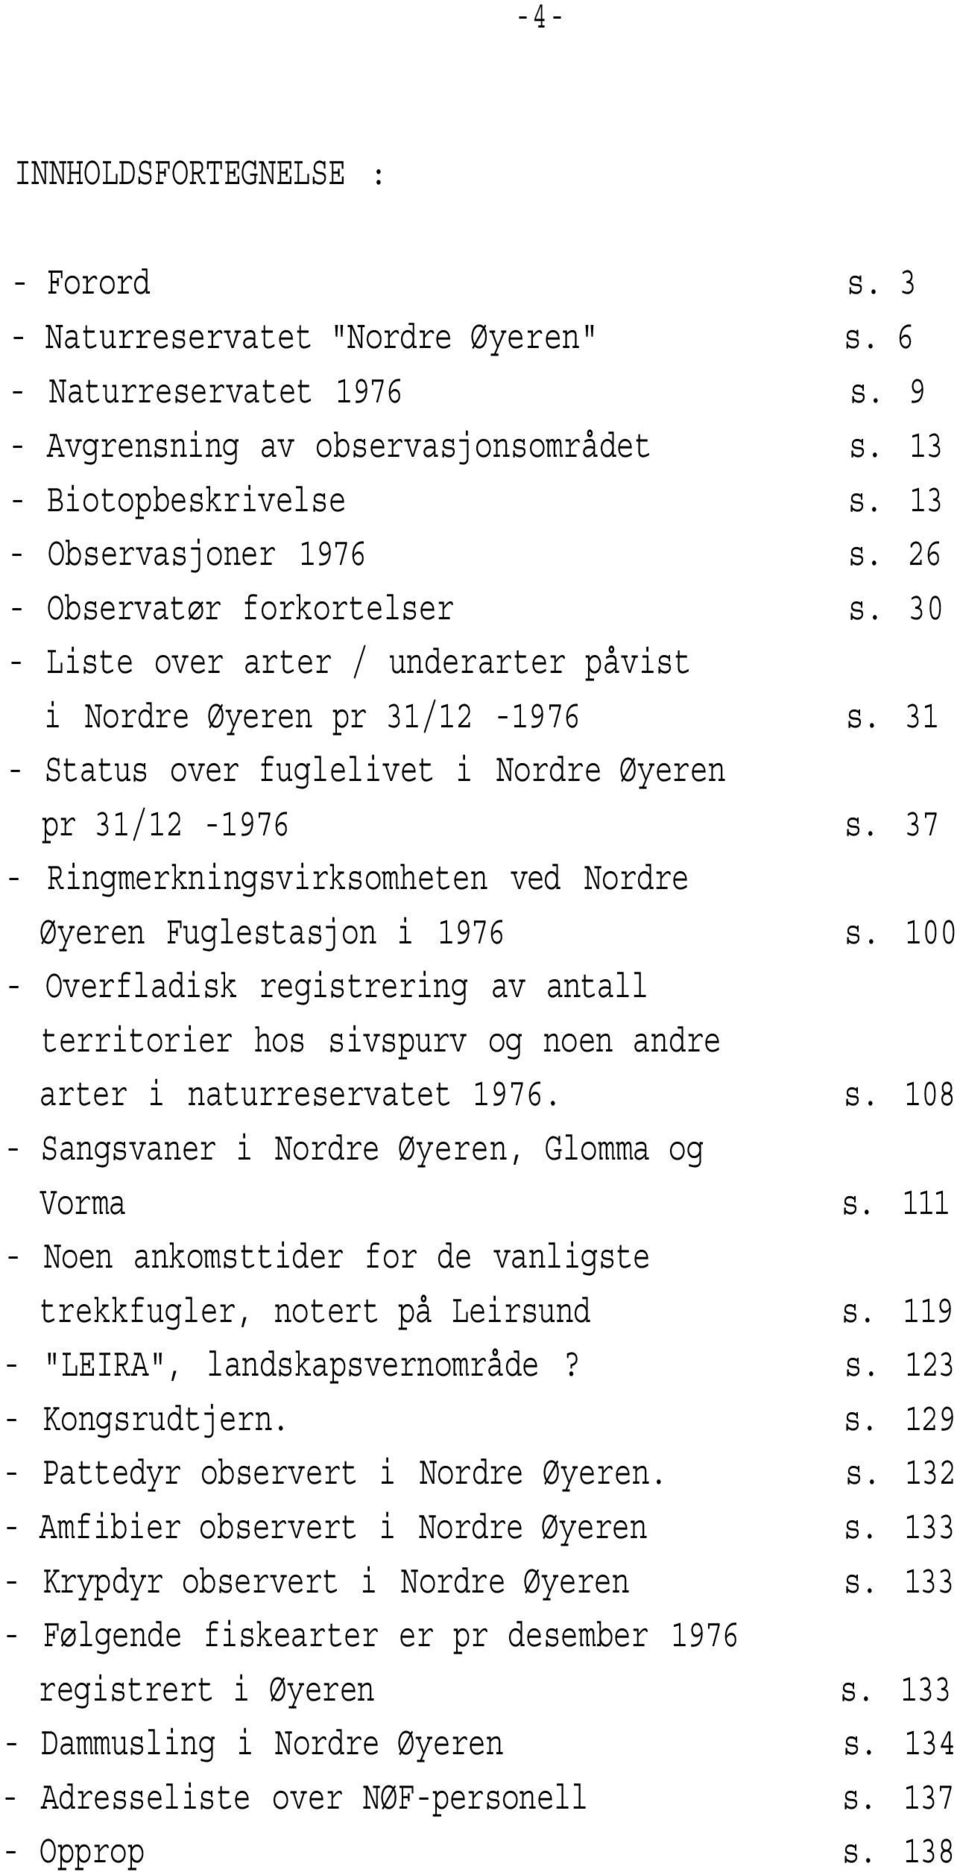 37 Ringmerkningsvirksomheten ved Nordre Øyeren Fuglestasjon i 1976 s. 100 Overfladisk registrering av antall territorier hos sivspurv og noen andre arter i naturreservatet 1976. s. 108 Sangsvaner i Nordre Øyeren, Glomma og Vorma s.